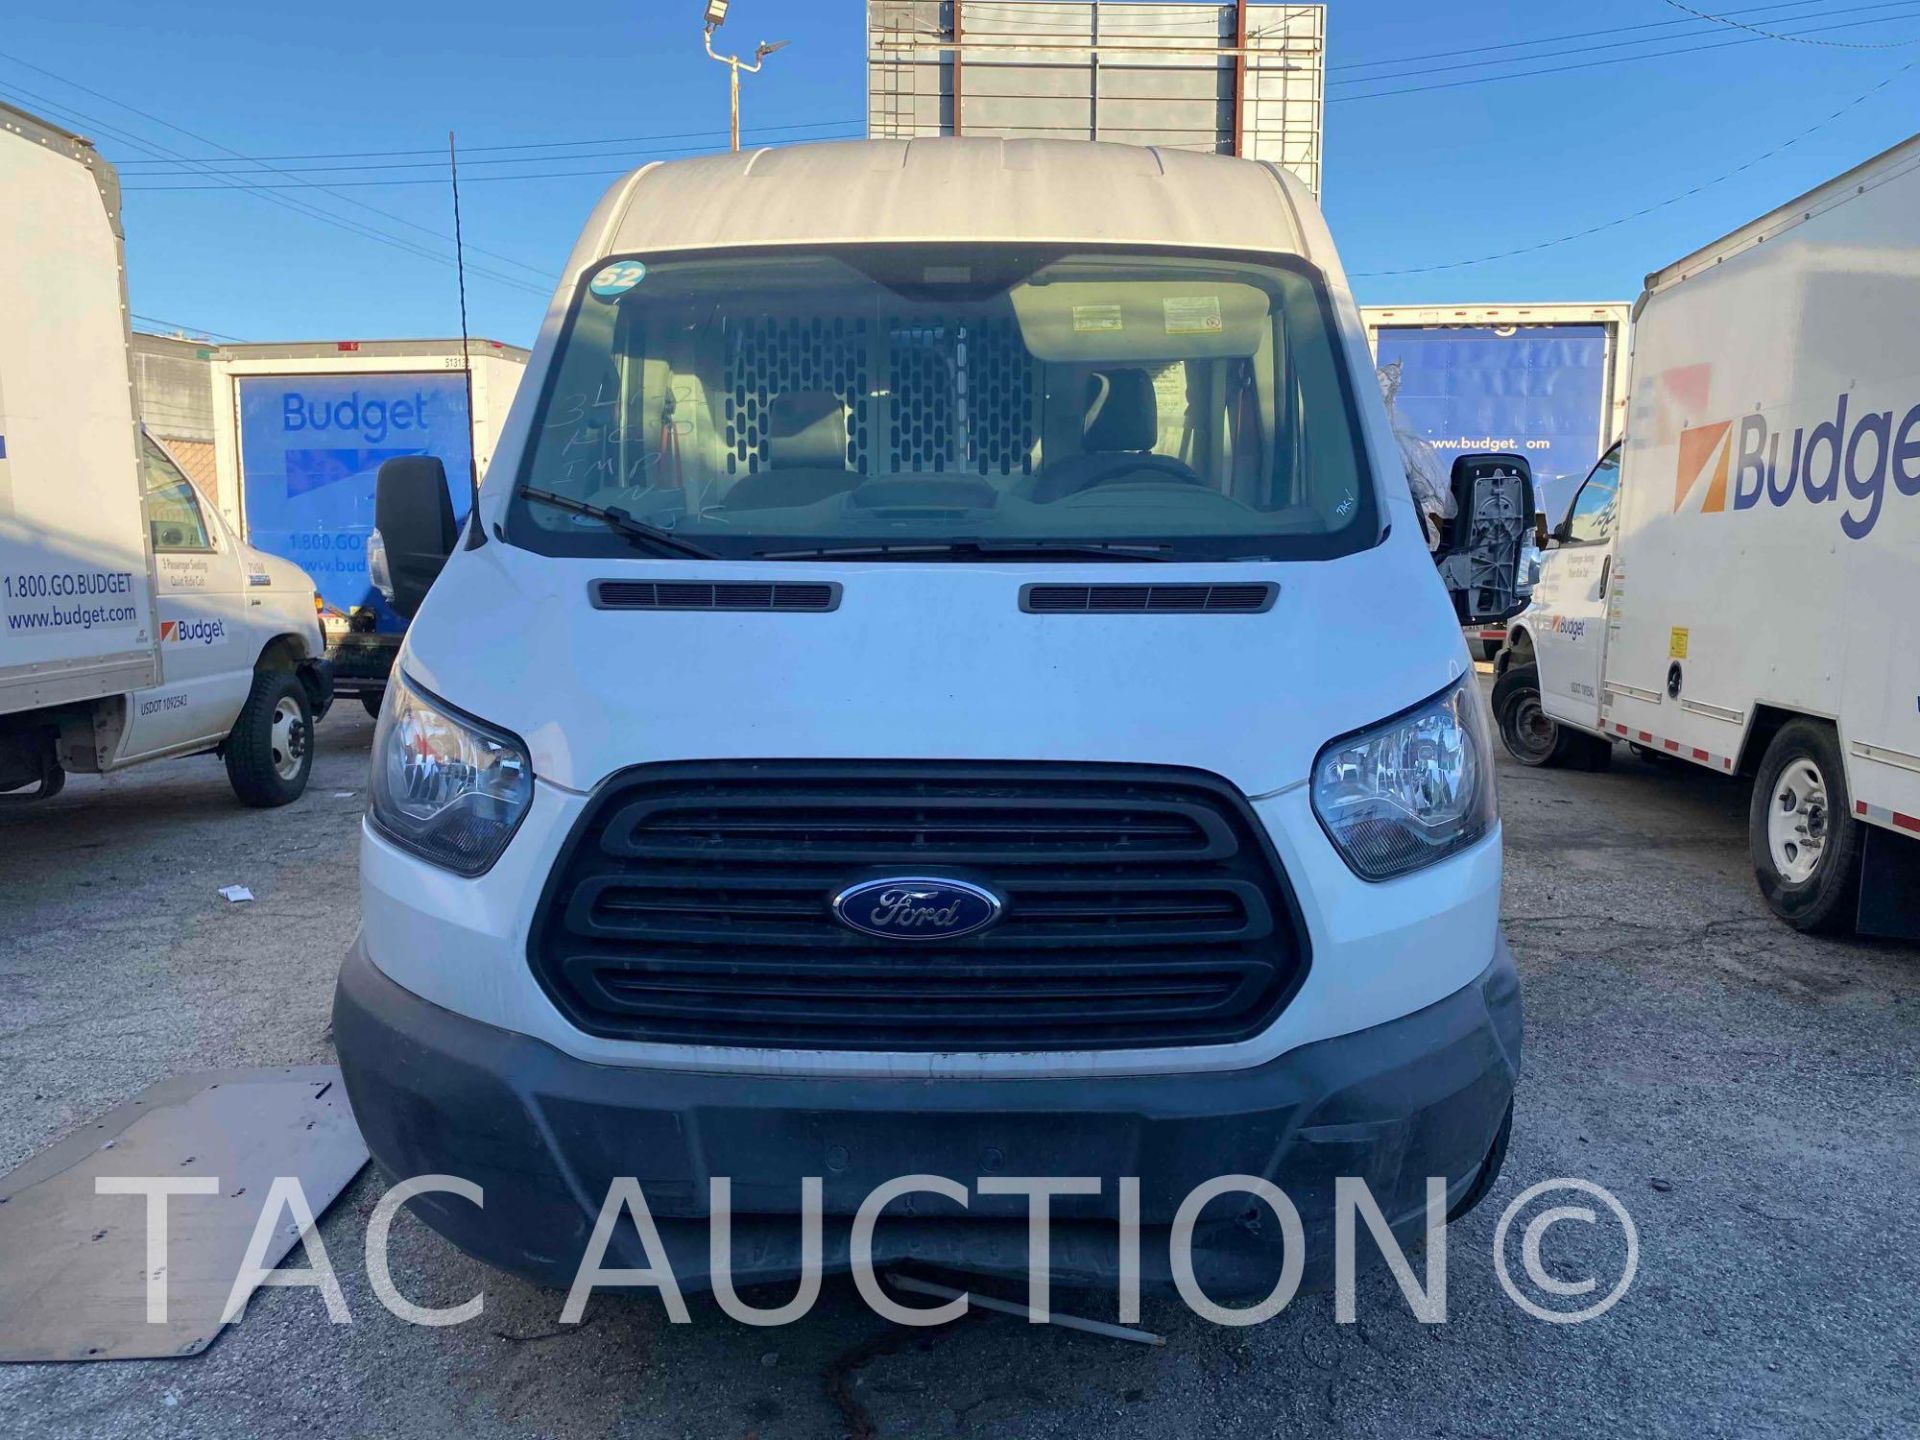 2019 Ford Transit 150 Cargo Van - Image 2 of 46